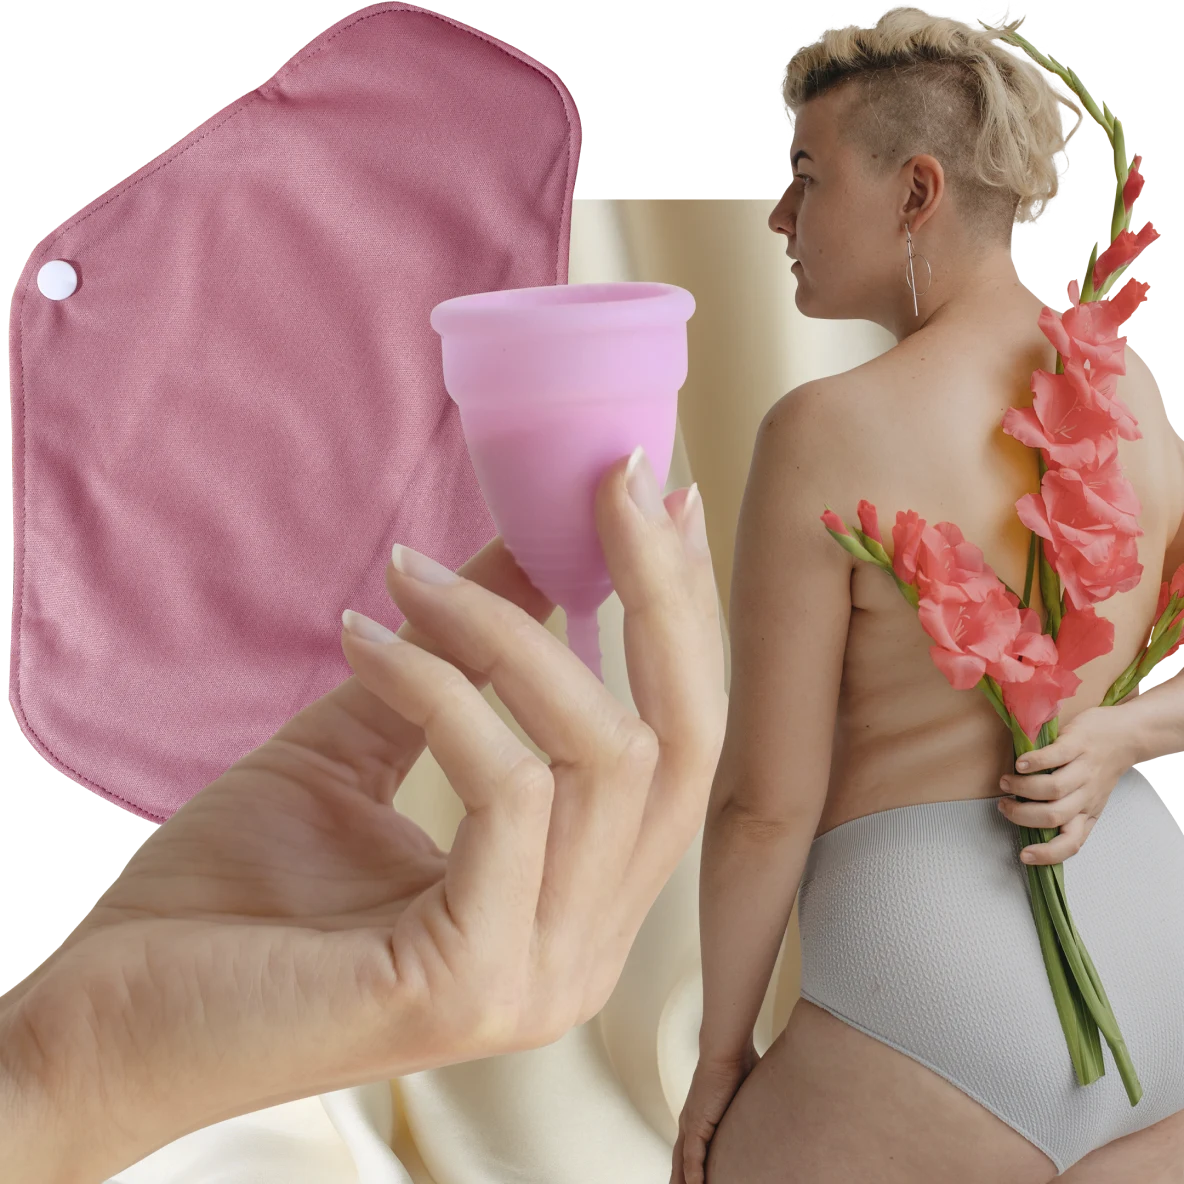 Una mano bianca regge una coppetta mestruale rosa. A sinistra, un assorbente lavabile. A destra, una donna bianca dai capelli corti biondi tiene dei fiori rosa dietro la schiena.